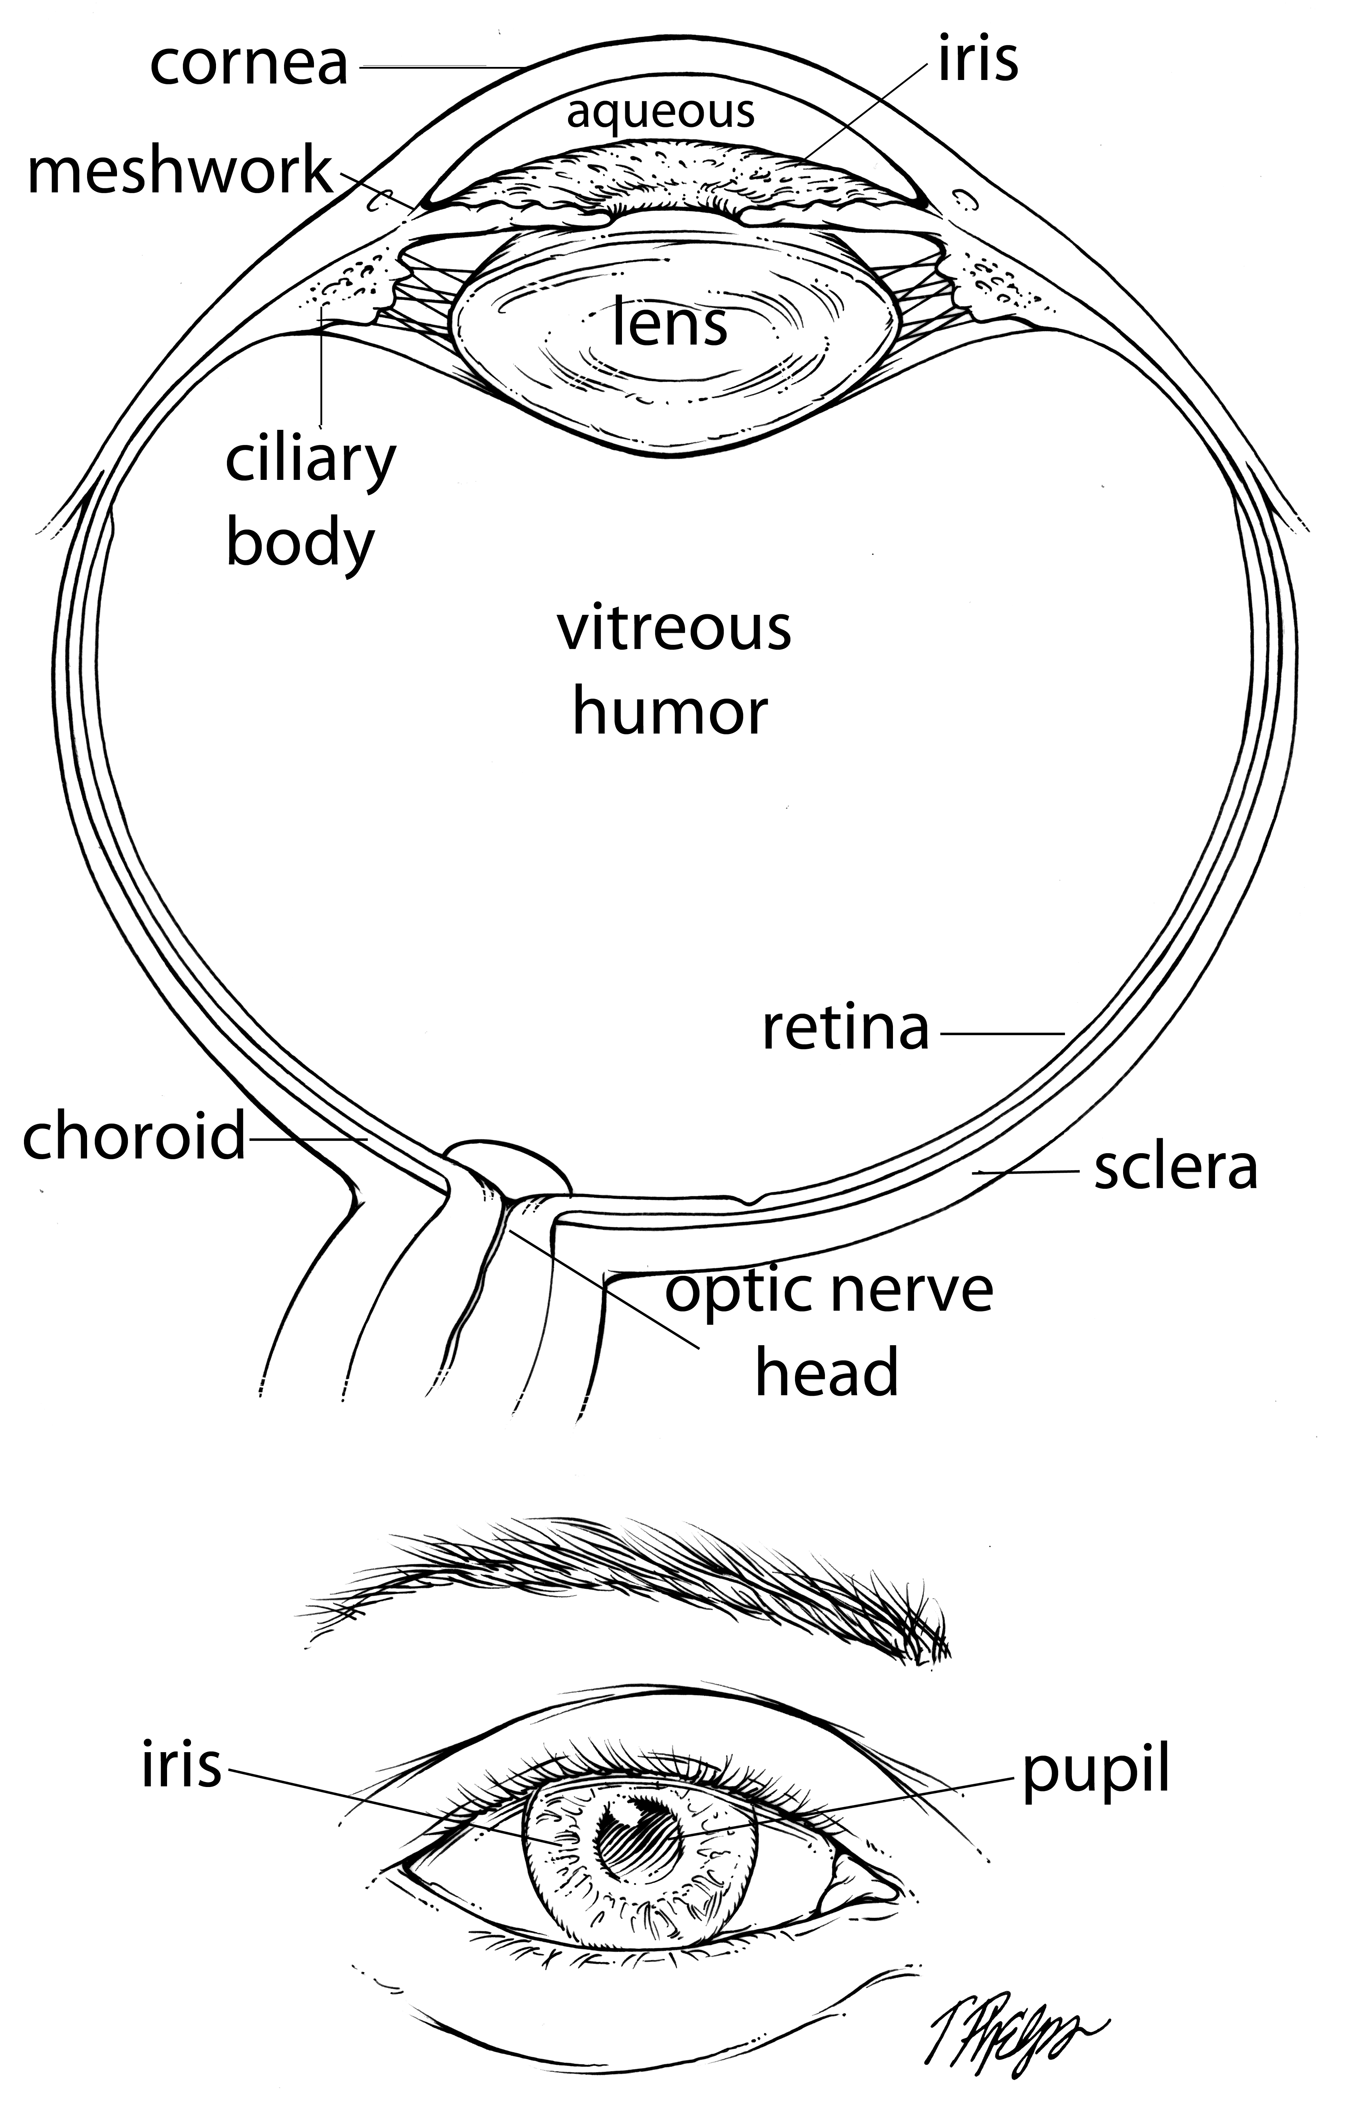 Eye and optic nerve anatomy